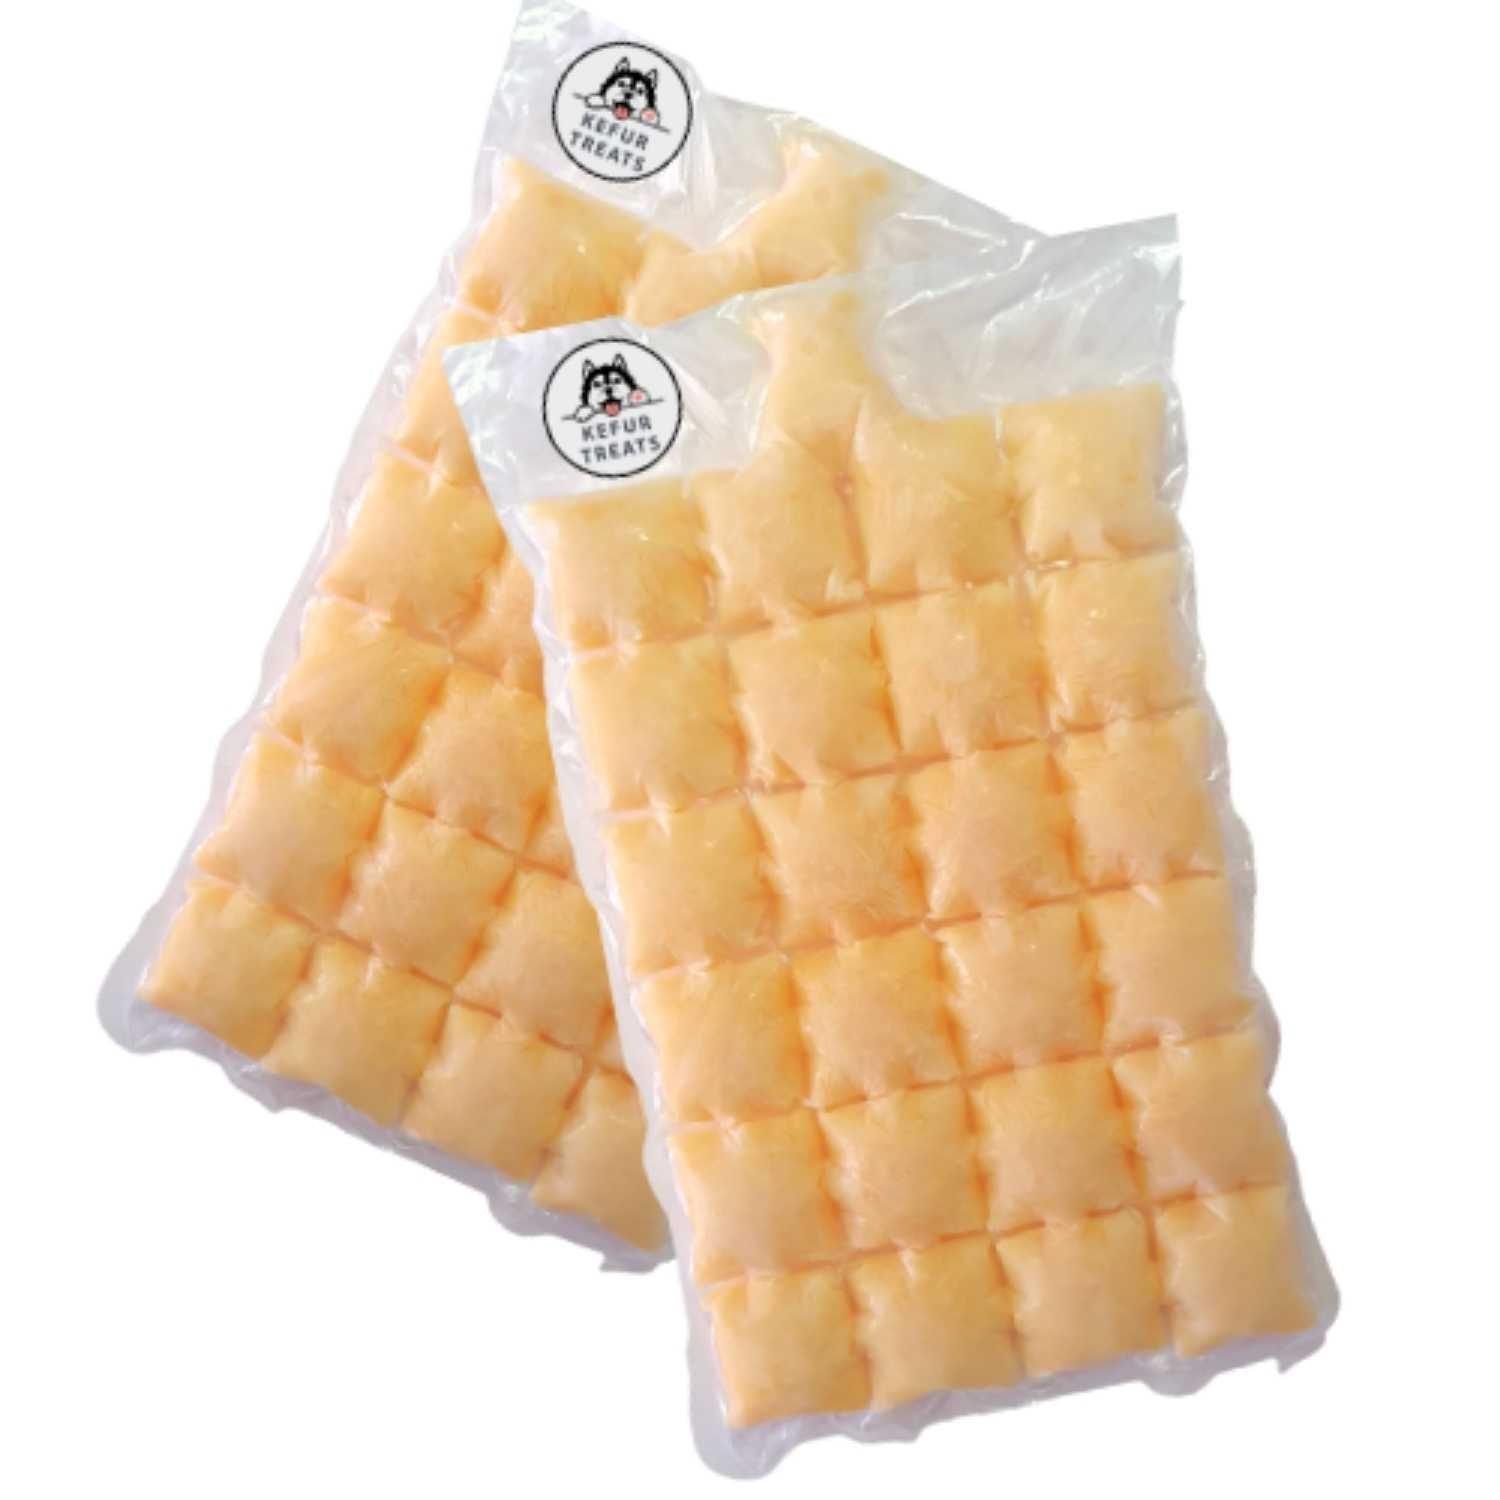 KEFUR TREATS - PUMPKIN Goat Milk Kefir Frozen Pack (24 Cubes) - Pet Treats